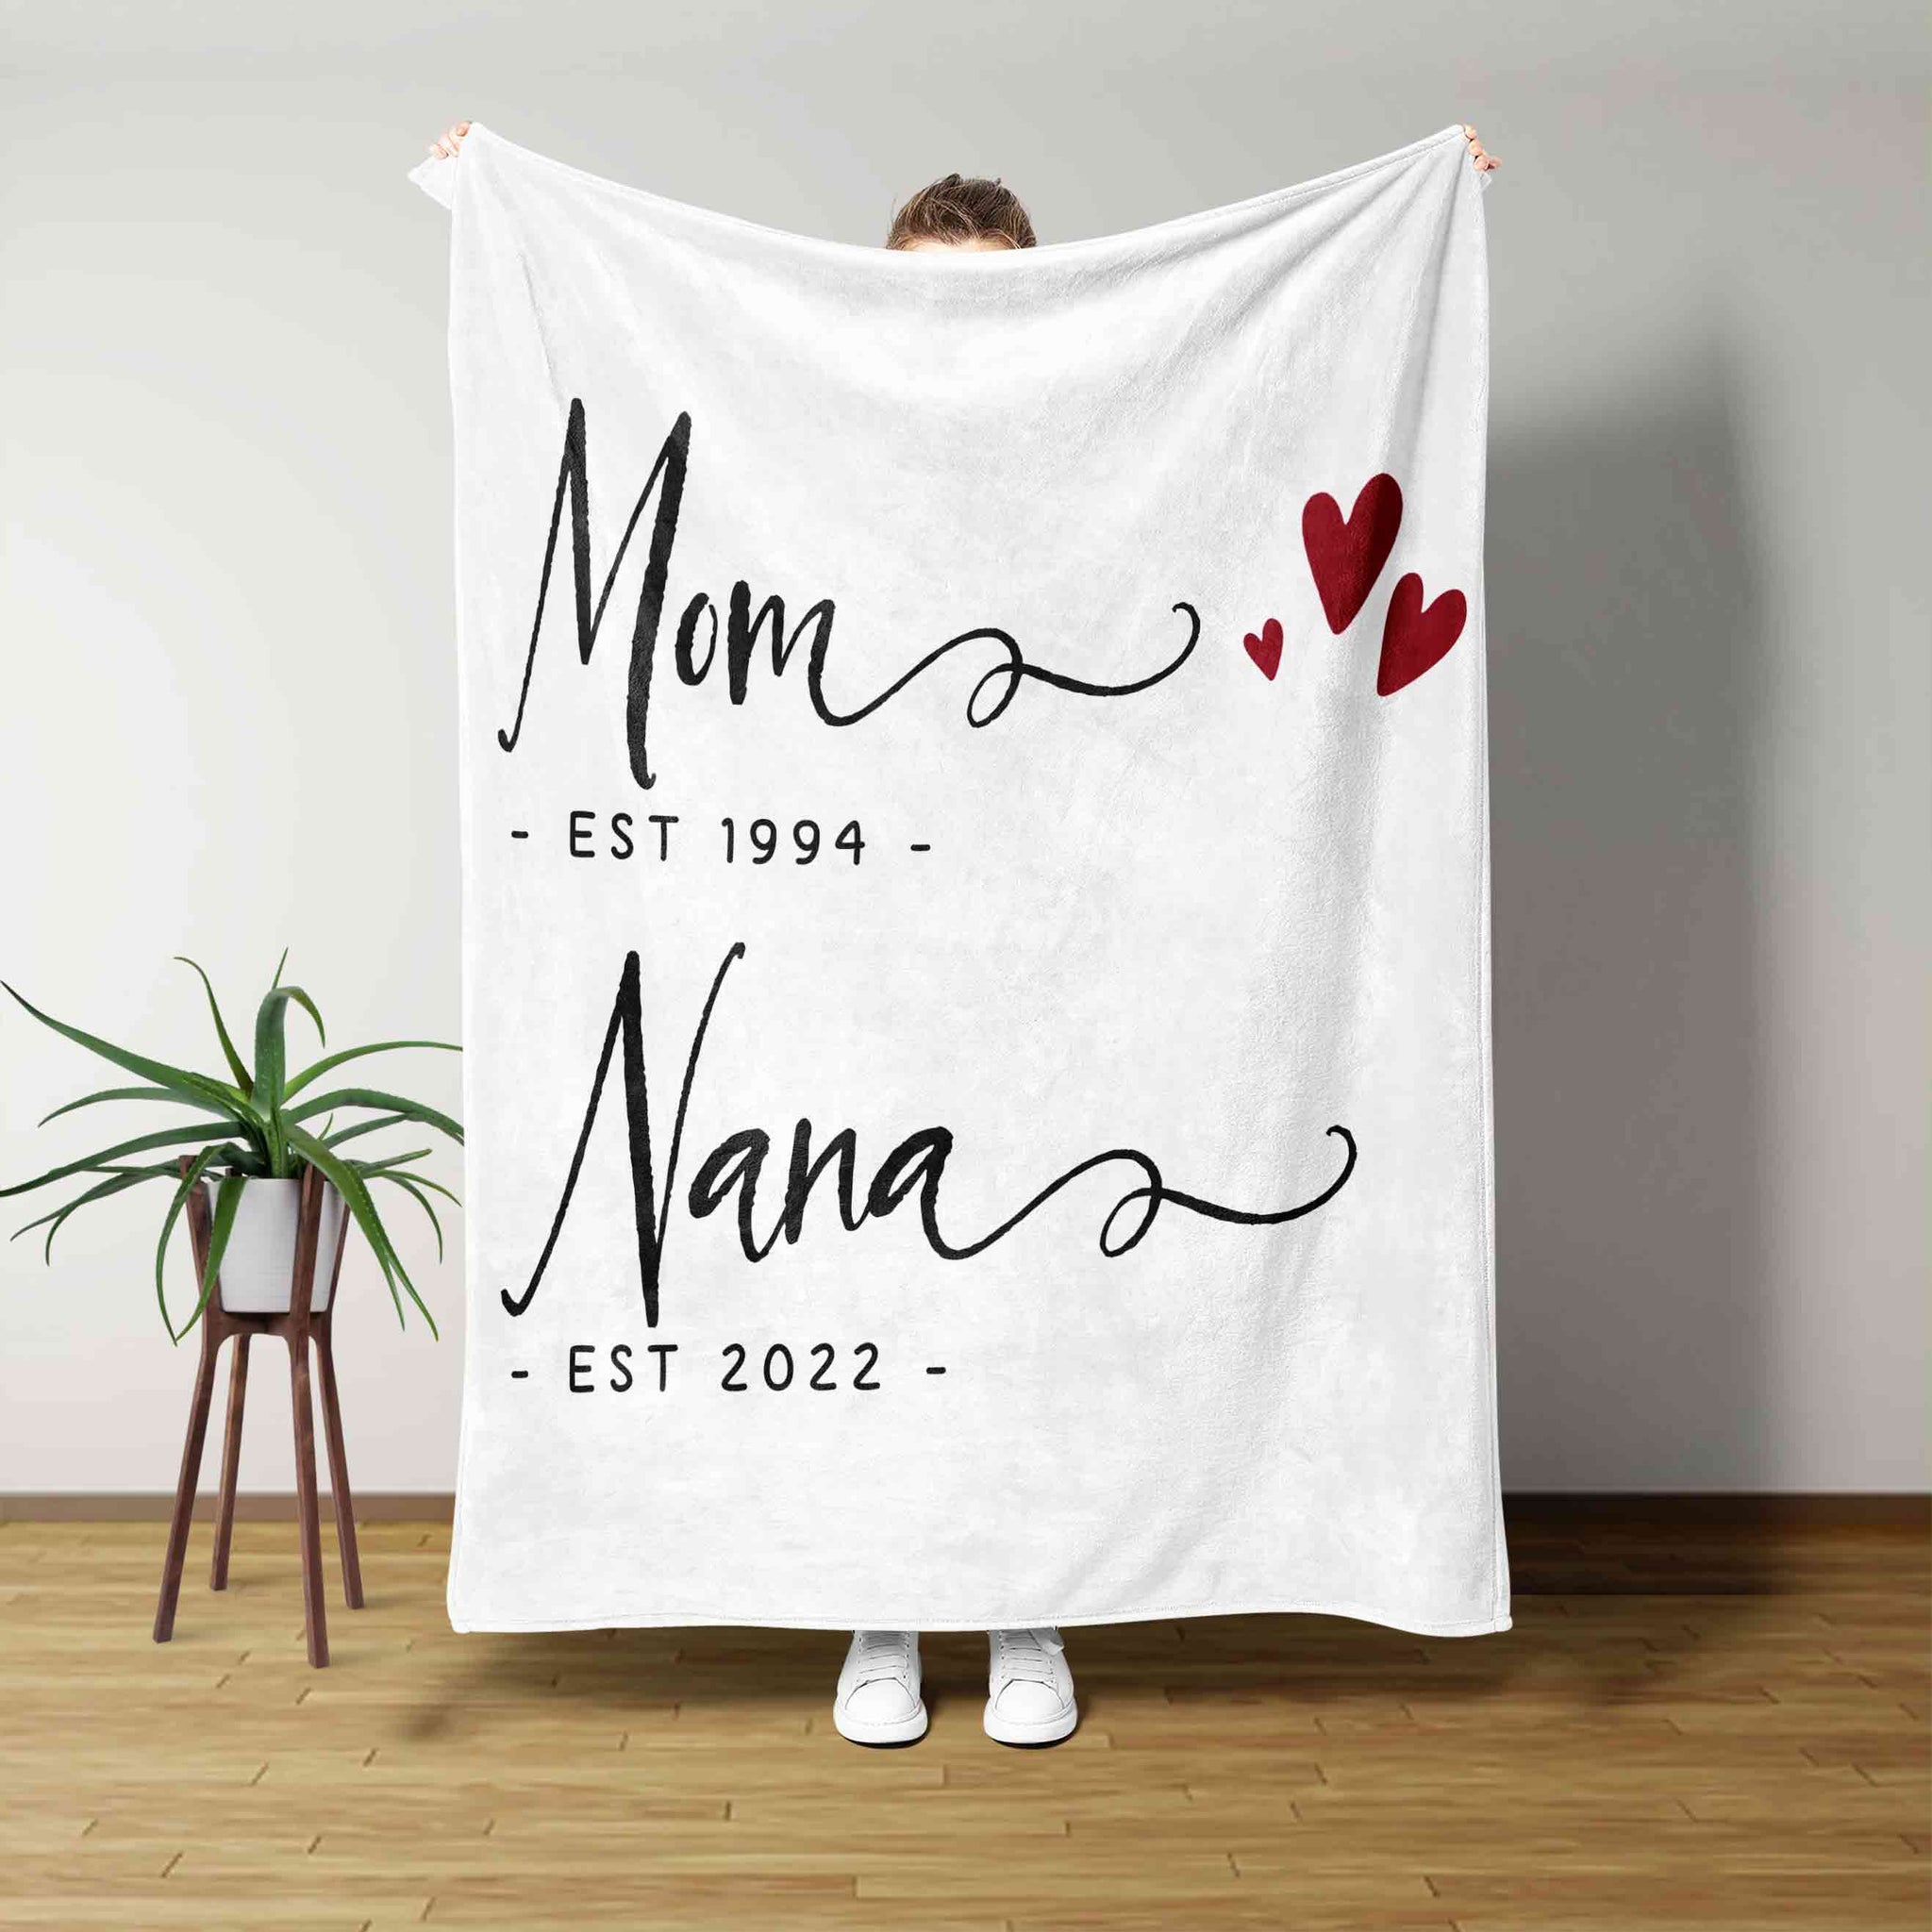 Mom Blanket, Nana Blanket, Heart Blanket, Family Blanket, Custom Name Blanket, Gift Blanket